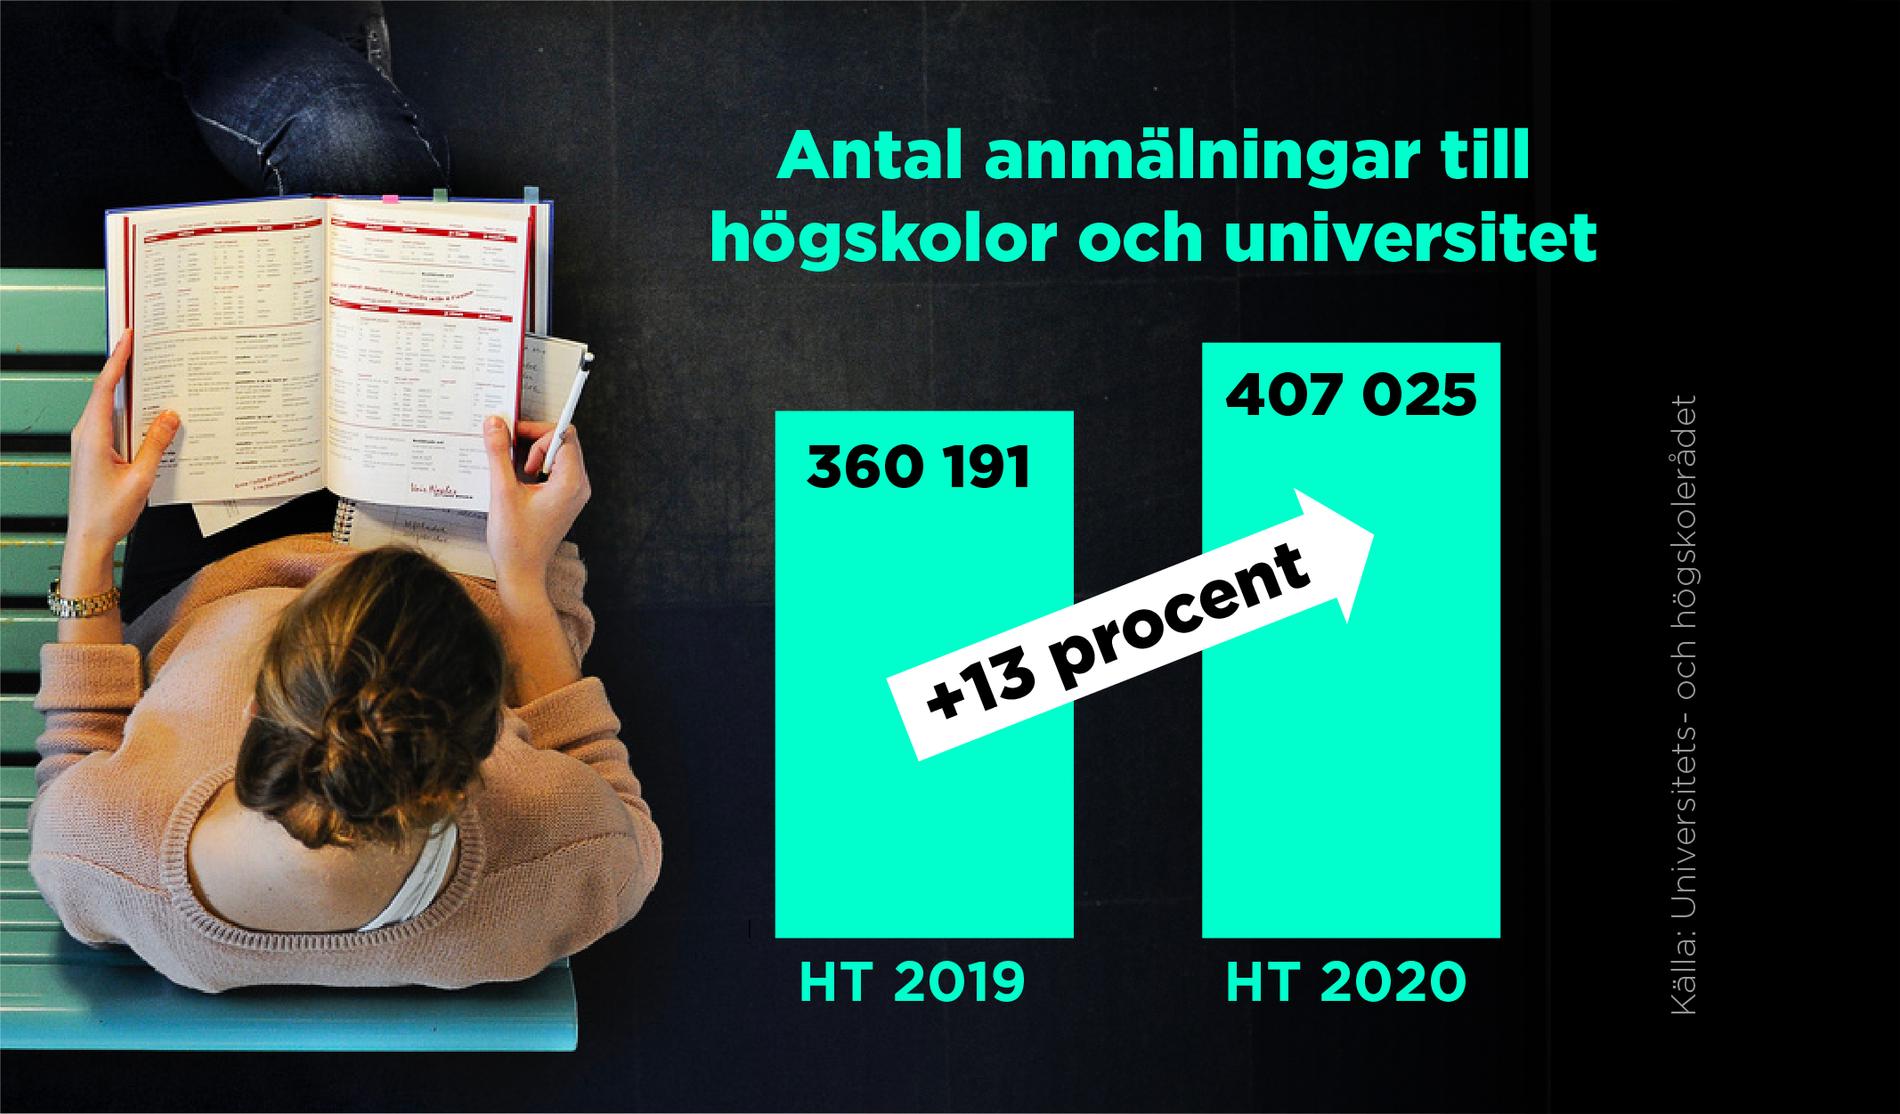 Antal ansökningar till högskolor och universitet till höstterminen 2020 jämfört med höstterminen 2019.